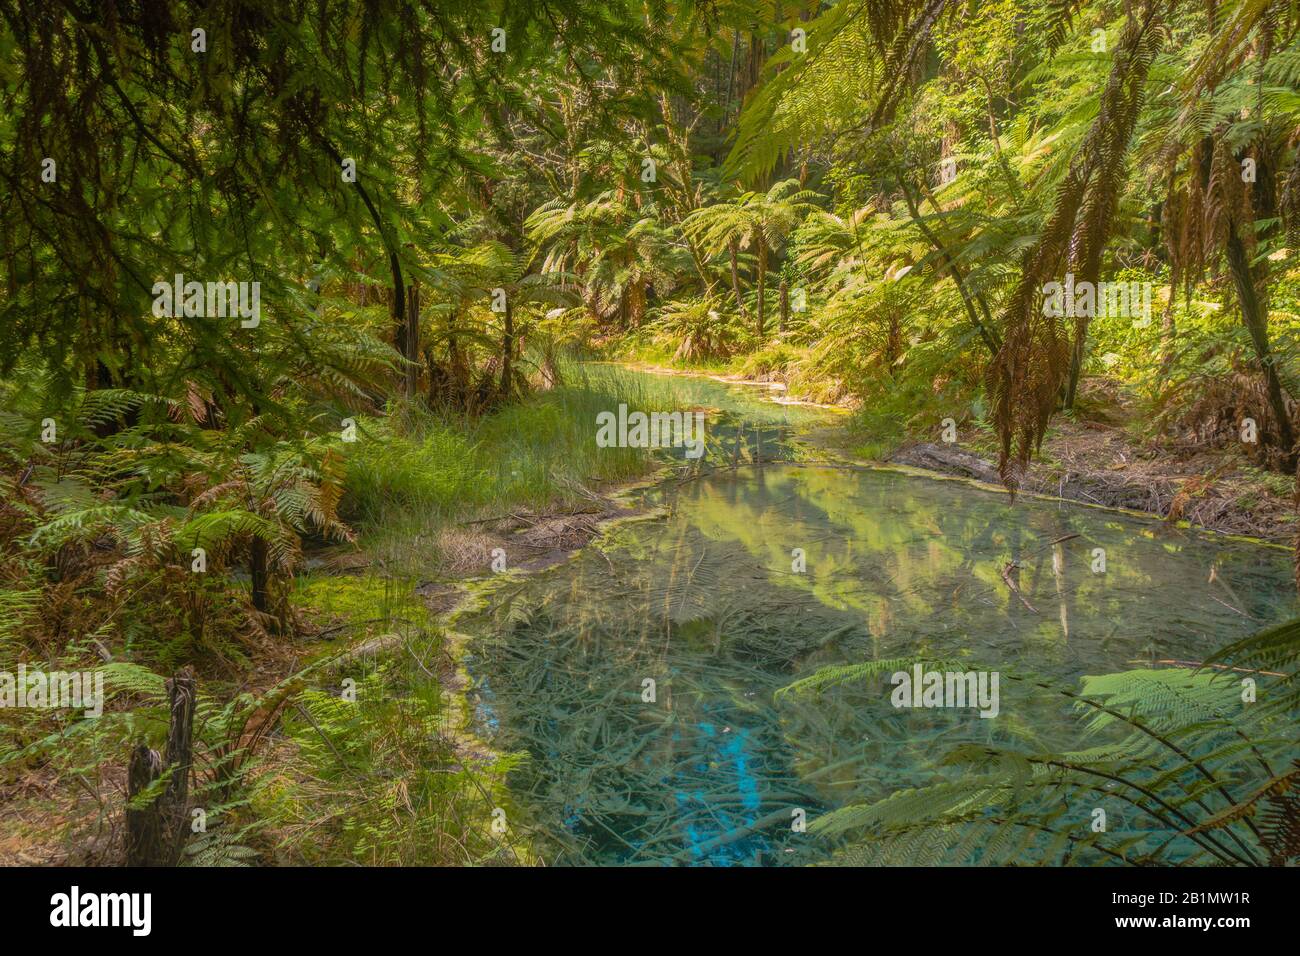 Bunter schwefelhaltiger See im Whakarewarewa Forest, Neuseeland. Mystisches, Magisches Versteck. Lizenzfreies Foto. Stockfoto